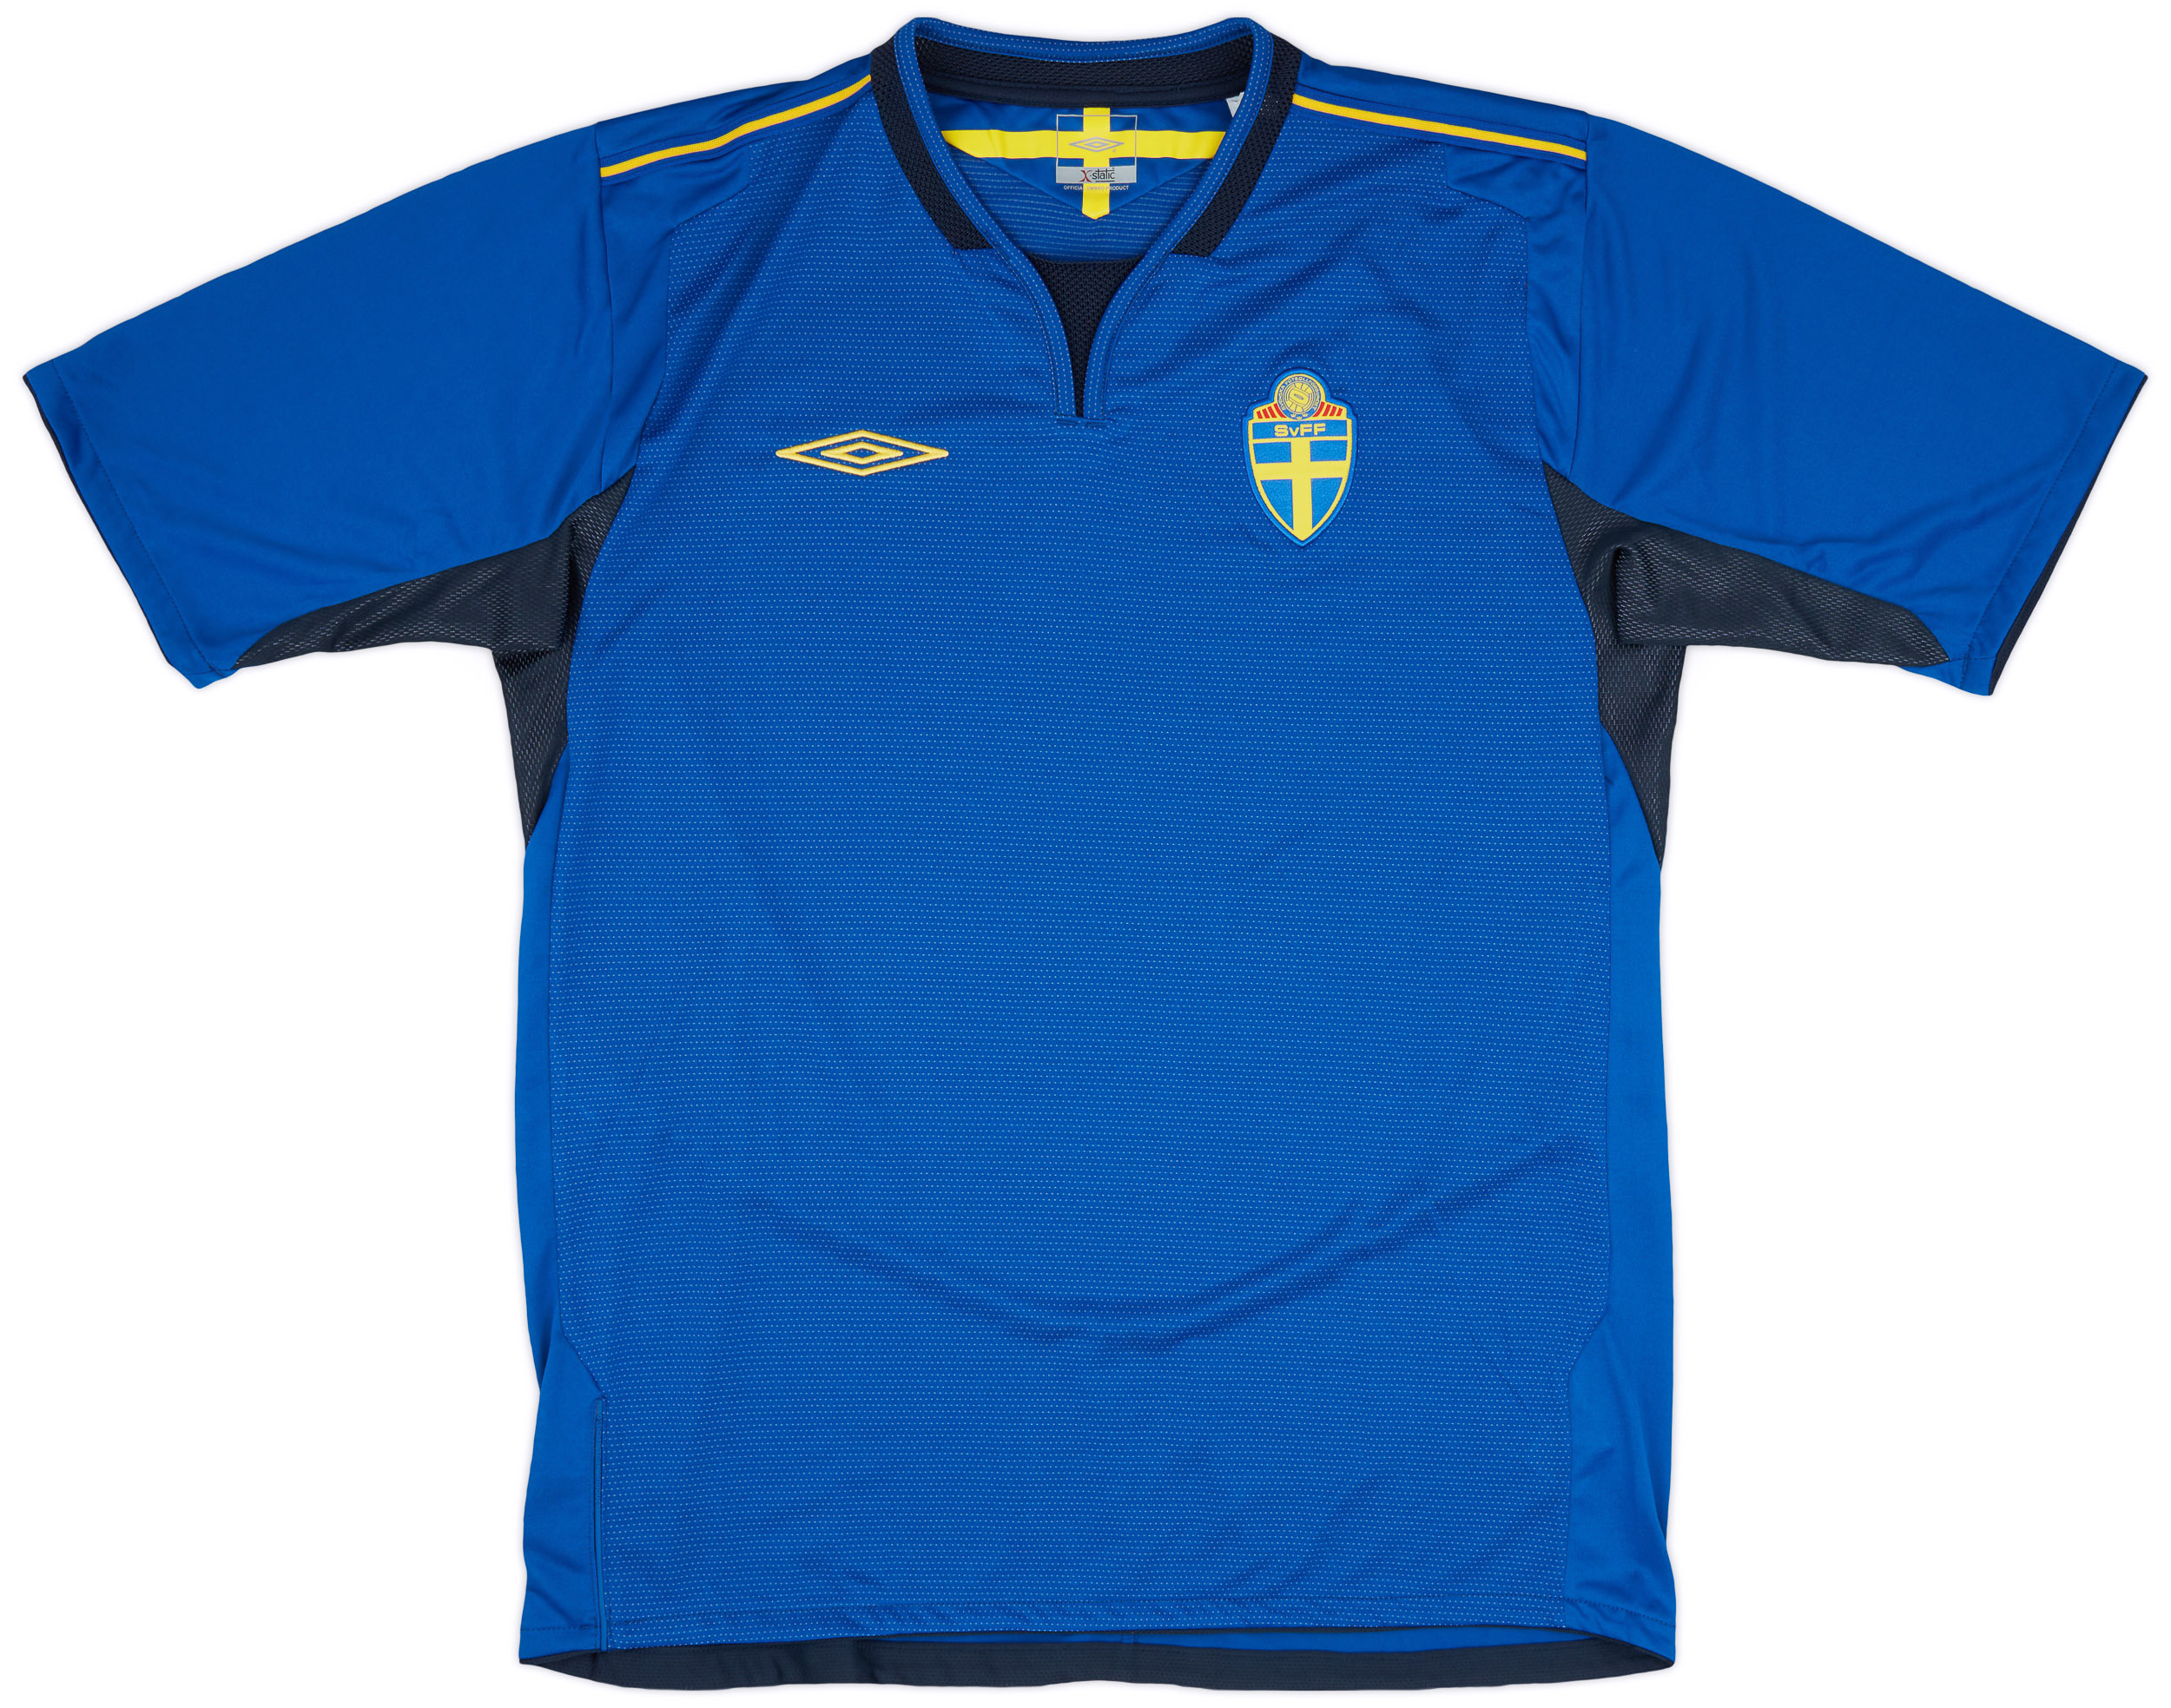 2005-06 Sweden Away Shirt - 9/10 - ()